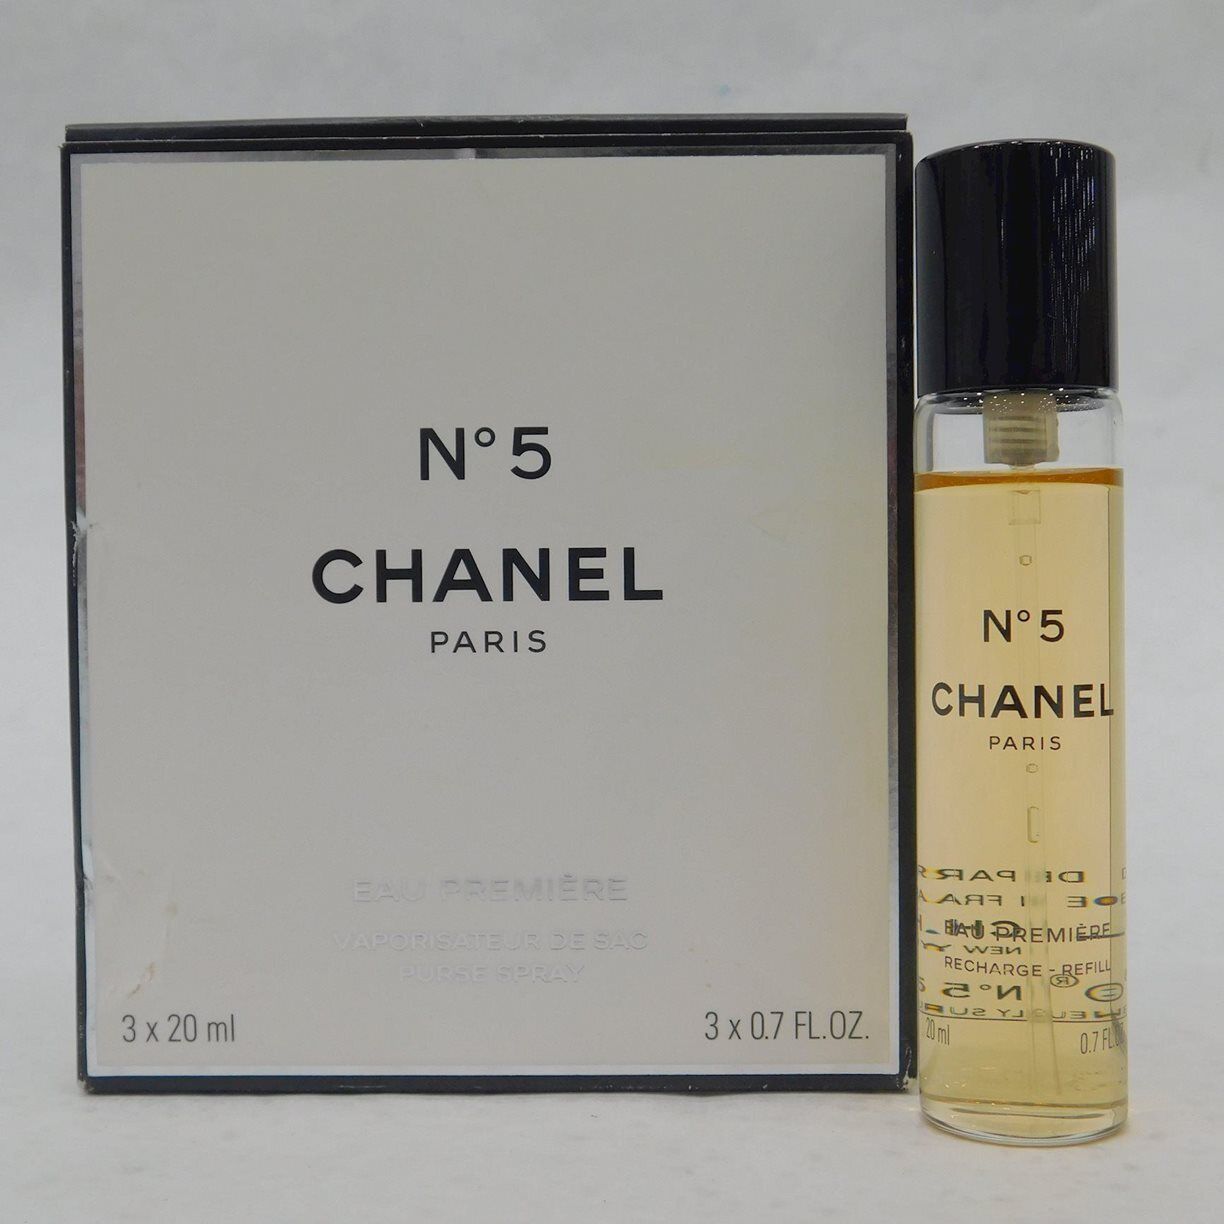 Chanel No. 5 Eau Premiere Purse Spray Perfume-Partial Bottle